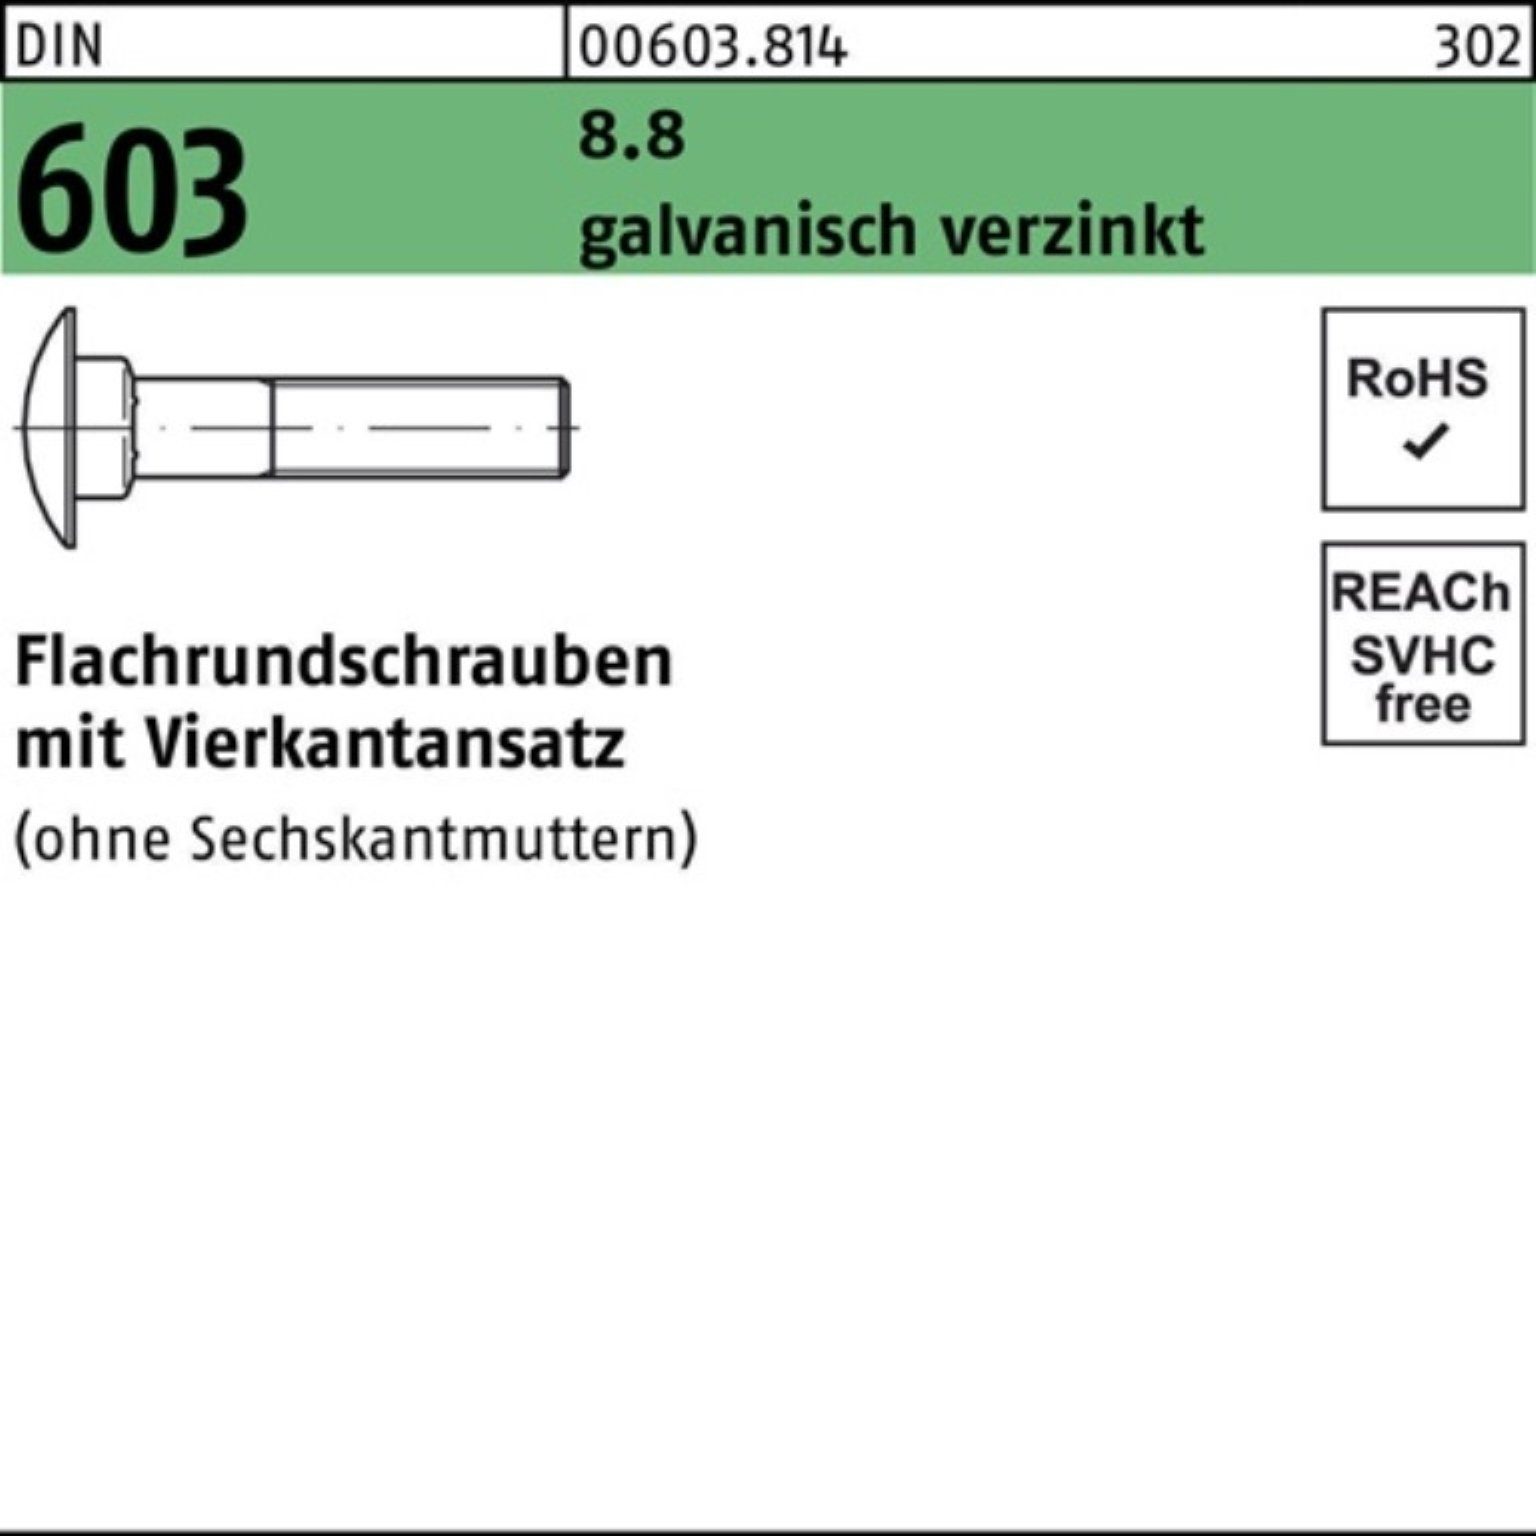 Flachrundschraube Vierkantansatz Schraube Pack 603 M6x20 8.8 galv.ver DIN 500er Reyher